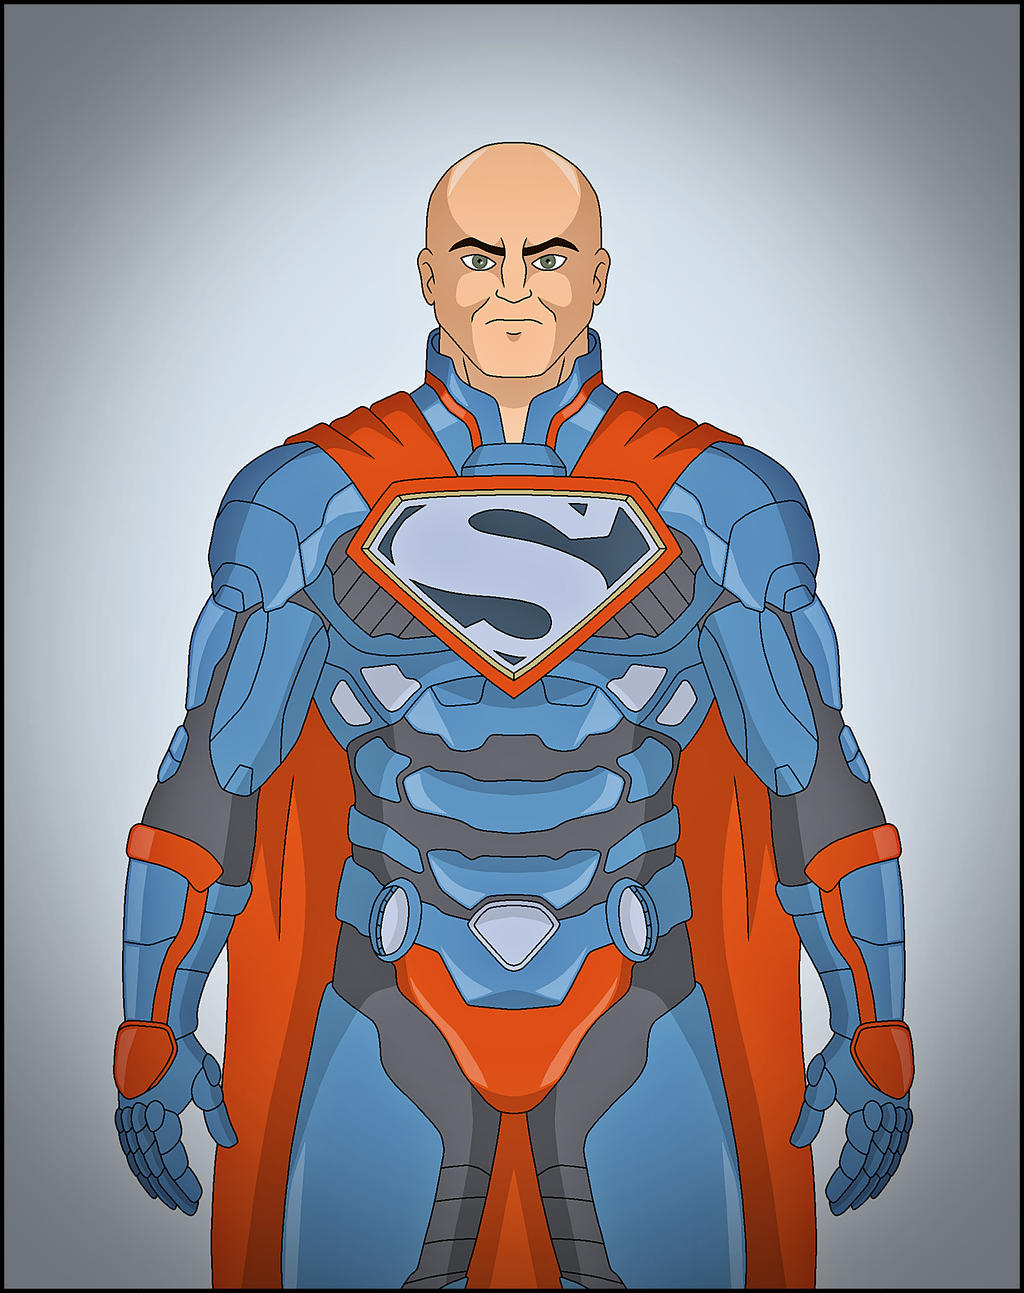 Infinite Answers [Damian] Lex_luthor___superman_by_dragand_dat0zm4-fullview.jpg?token=eyJ0eXAiOiJKV1QiLCJhbGciOiJIUzI1NiJ9.eyJzdWIiOiJ1cm46YXBwOjdlMGQxODg5ODIyNjQzNzNhNWYwZDQxNWVhMGQyNmUwIiwiaXNzIjoidXJuOmFwcDo3ZTBkMTg4OTgyMjY0MzczYTVmMGQ0MTVlYTBkMjZlMCIsIm9iaiI6W1t7ImhlaWdodCI6Ijw9MTI5MyIsInBhdGgiOiJcL2ZcLzQ0NzUzMzgwLWE0NDQtNGM3Yy05MmY4LWM4OWE0NGY2YTZkMFwvZGF0MHptNC01ZmVkMmM3MC1jNGMzLTRmODMtODU2YS1mMTUzYmEzM2FkMGEuanBnIiwid2lkdGgiOiI8PTEwMjQifV1dLCJhdWQiOlsidXJuOnNlcnZpY2U6aW1hZ2Uub3BlcmF0aW9ucyJdfQ